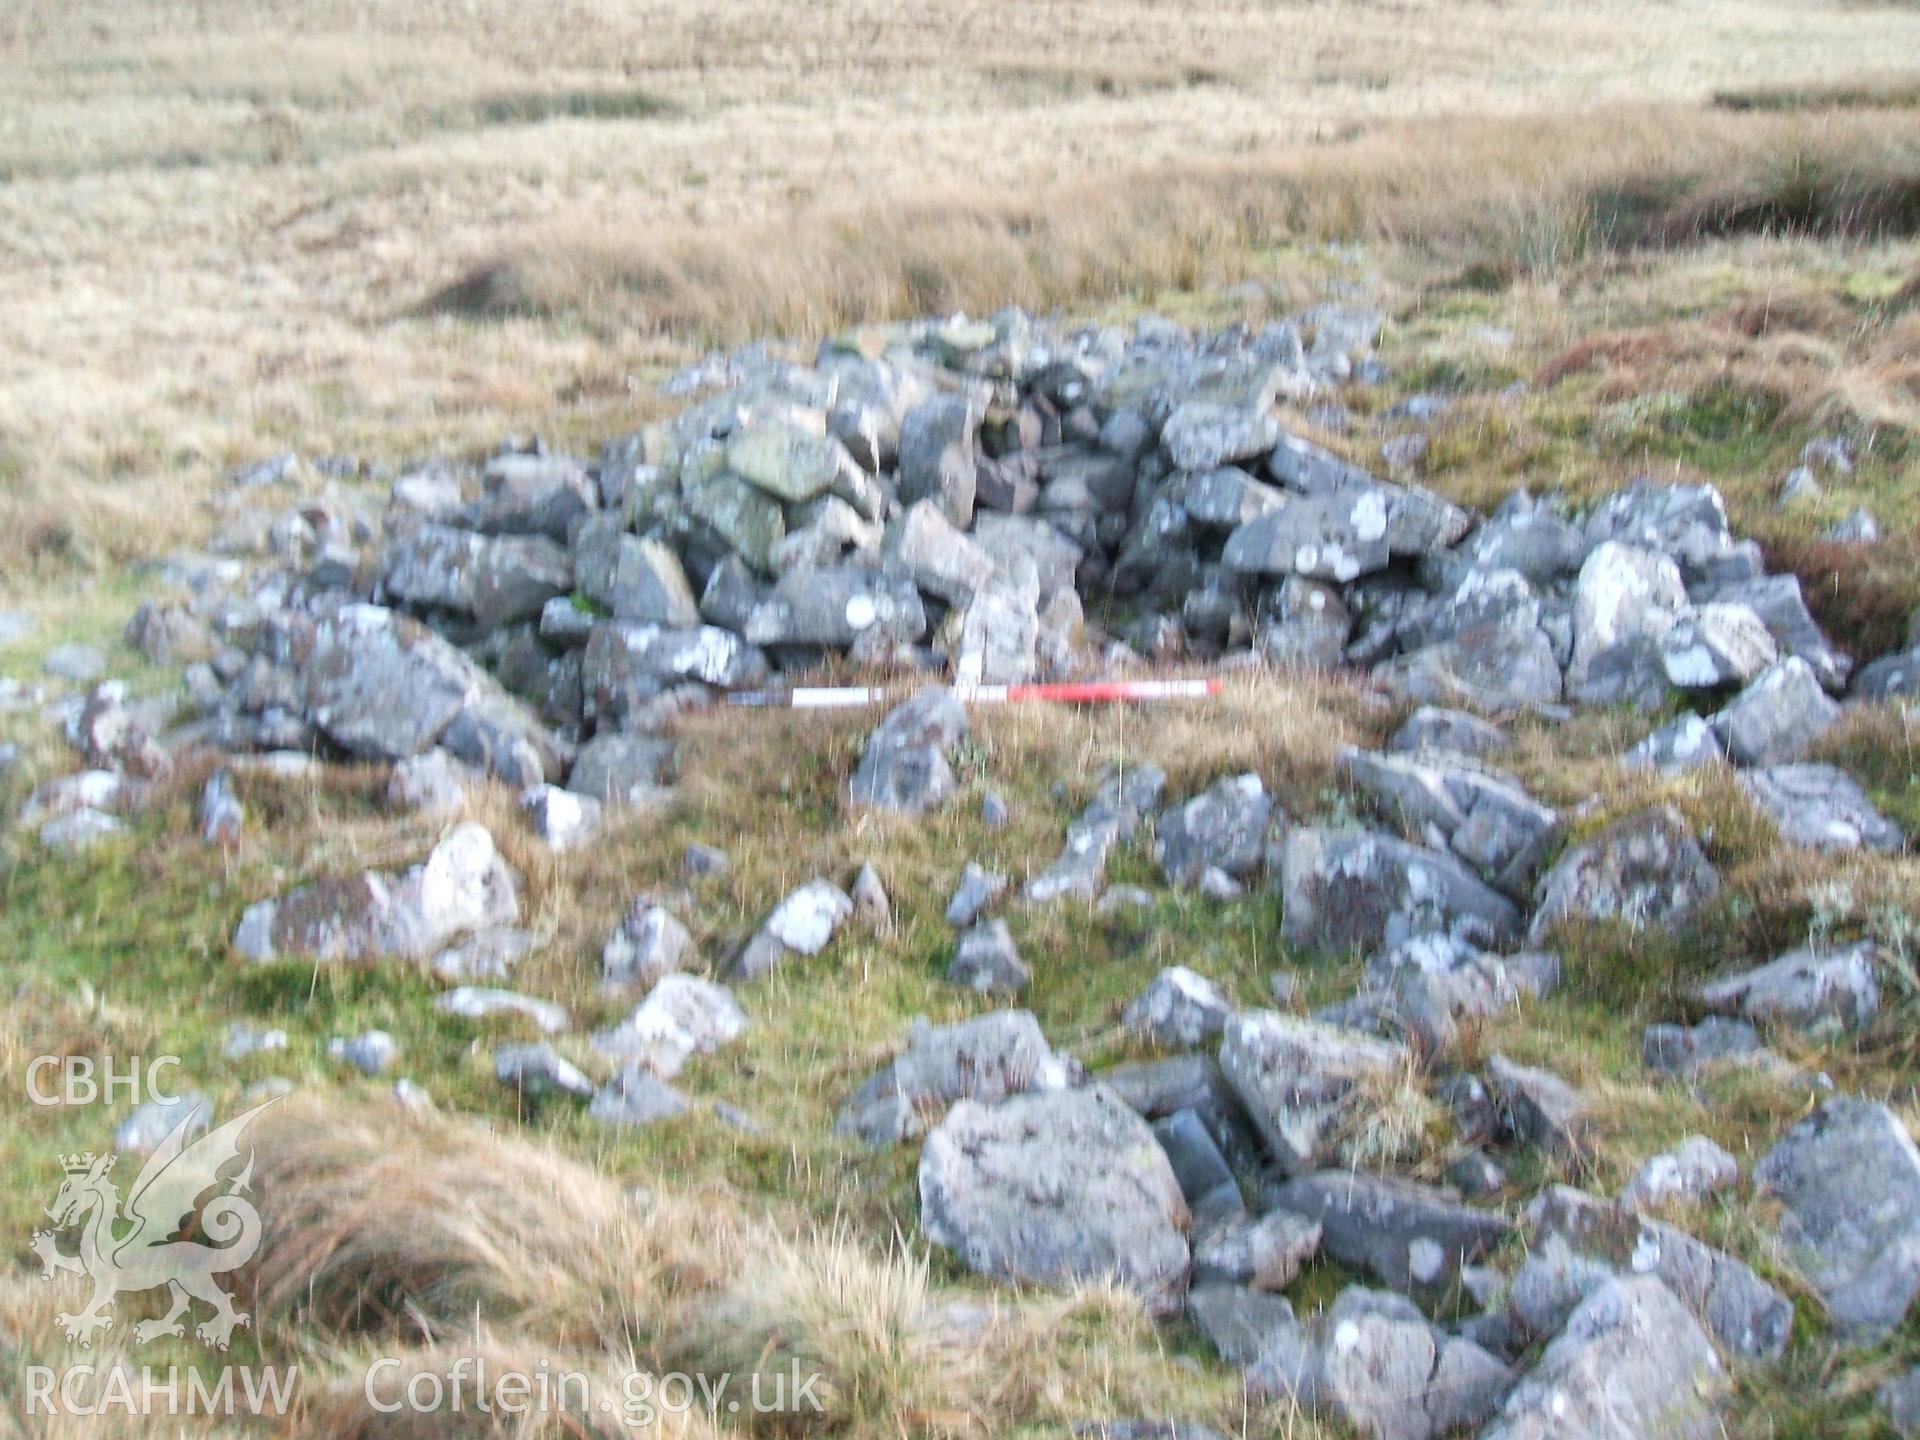 Digital colour photograph of a shepherds hut at Mynydd Llangynidr east II taken on 13/01/2009 by B. Britton during the Mynydd Llangynidr Upland Survey undertaken by ArchaeoPhysica.